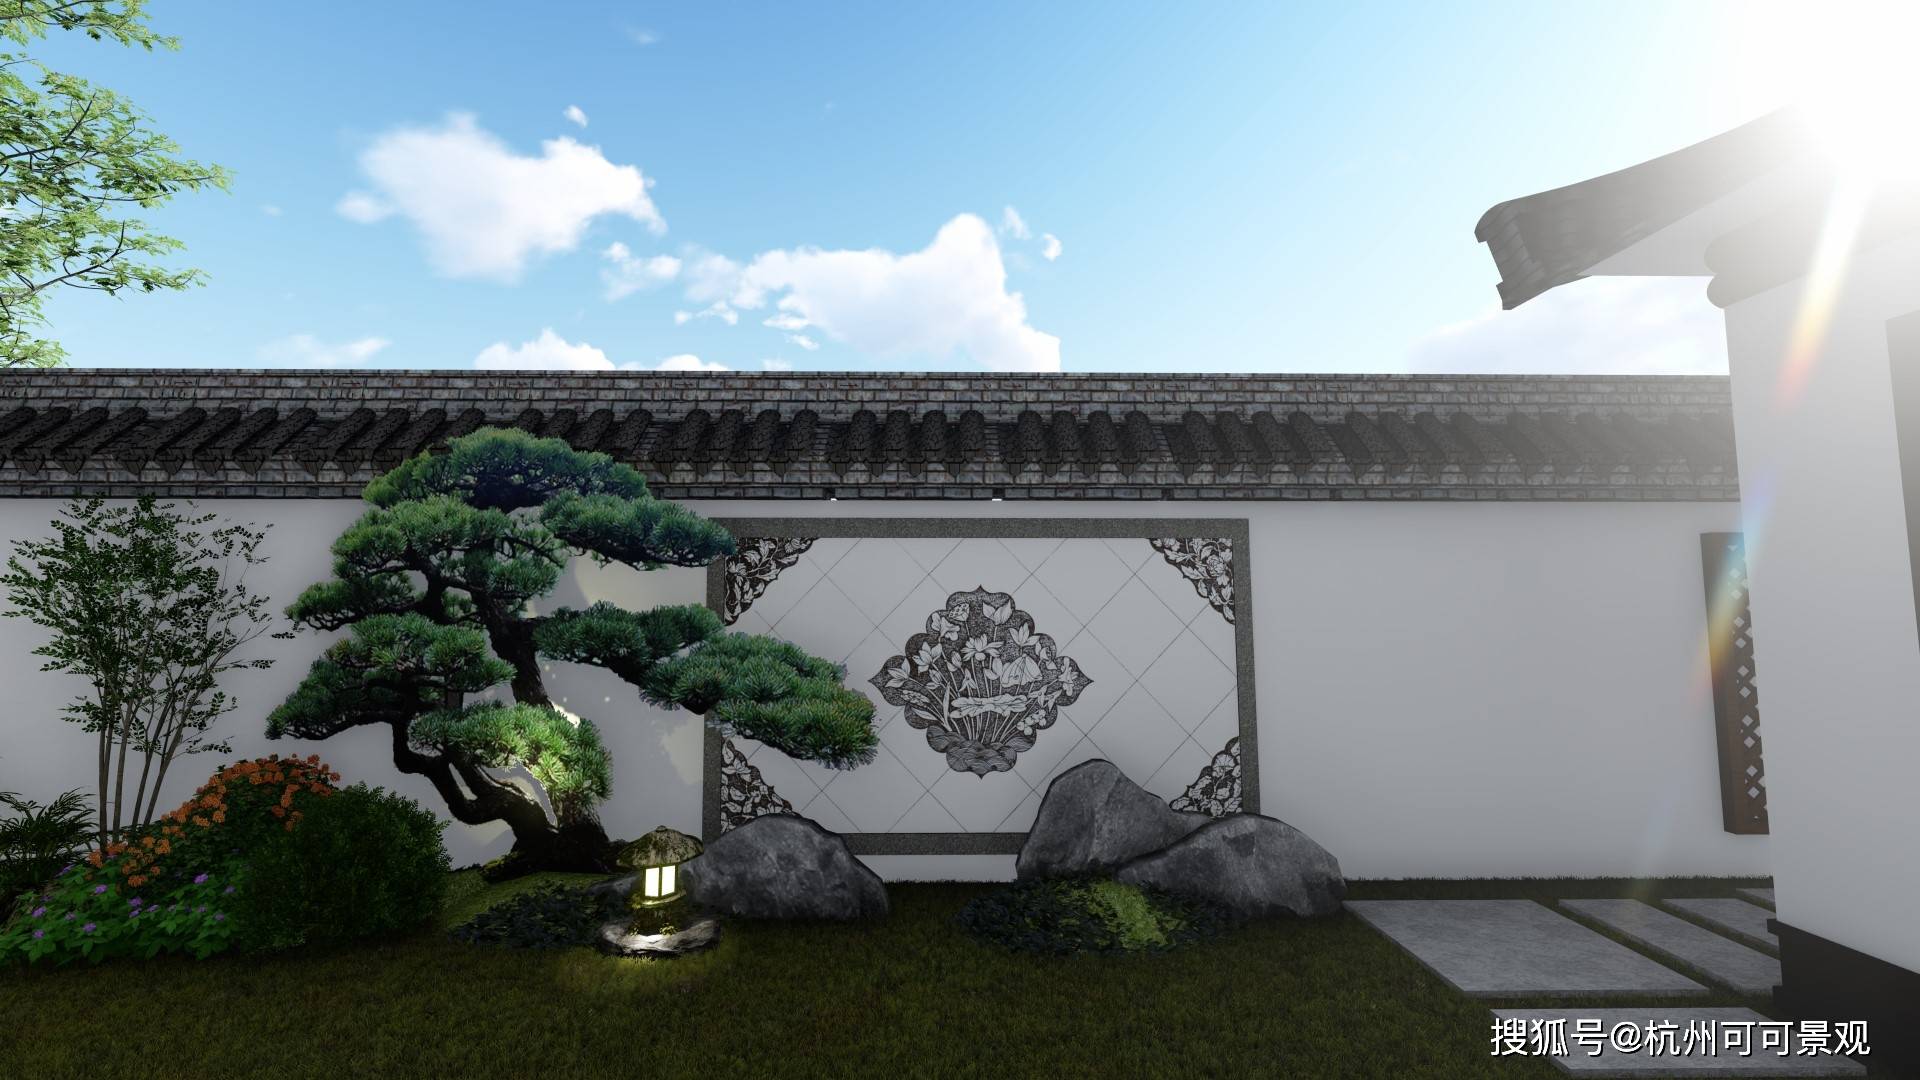 中式庭院设计:意境幽深,自有天地,将生活过成诗的中式